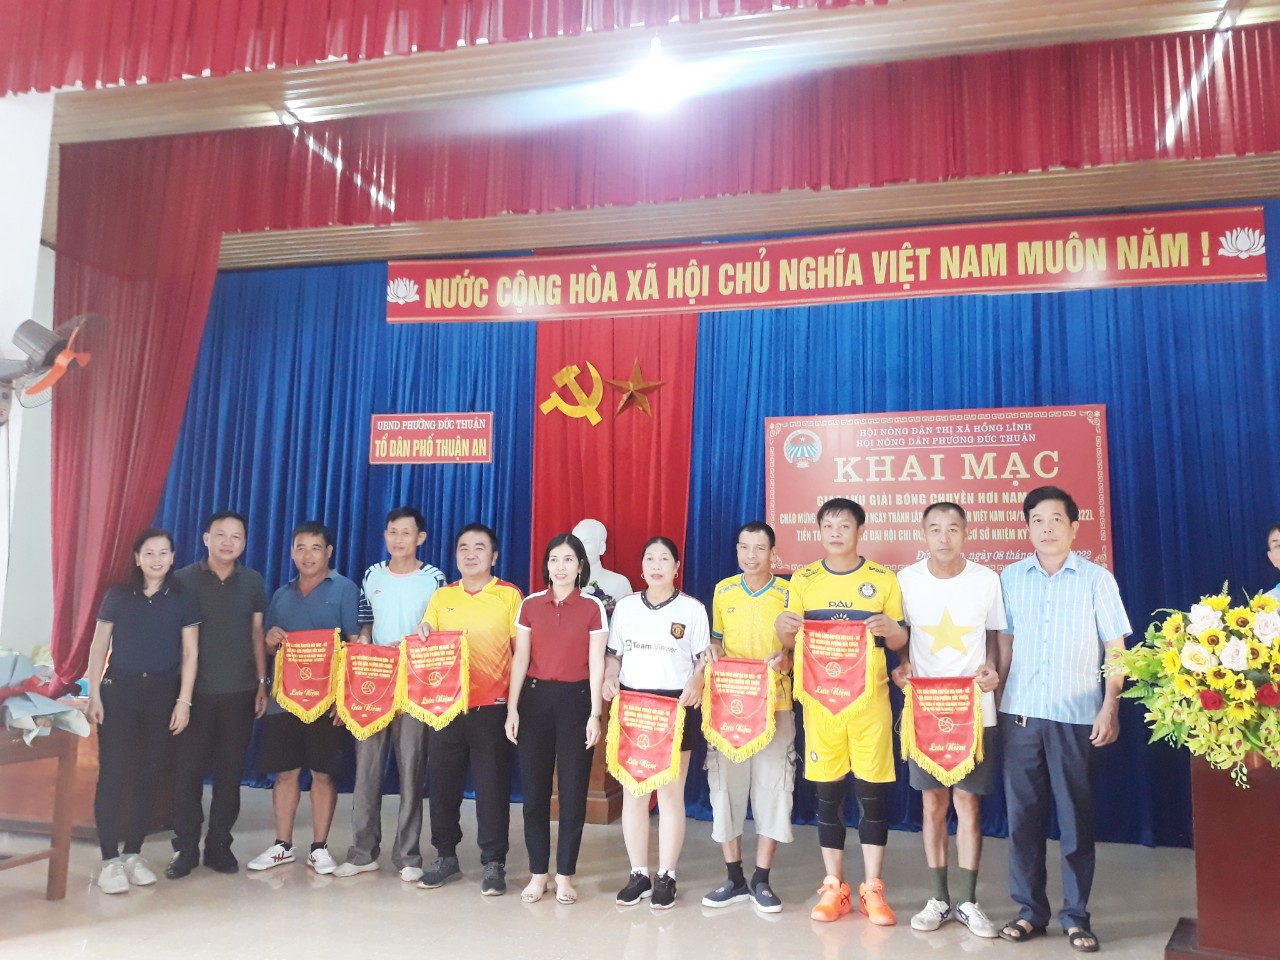 Đồng chí Phan Văn Quảng, Bí thư Đảng ủy phường Đức Thuận lên trao cờ lưu niệm cho các đội bóng